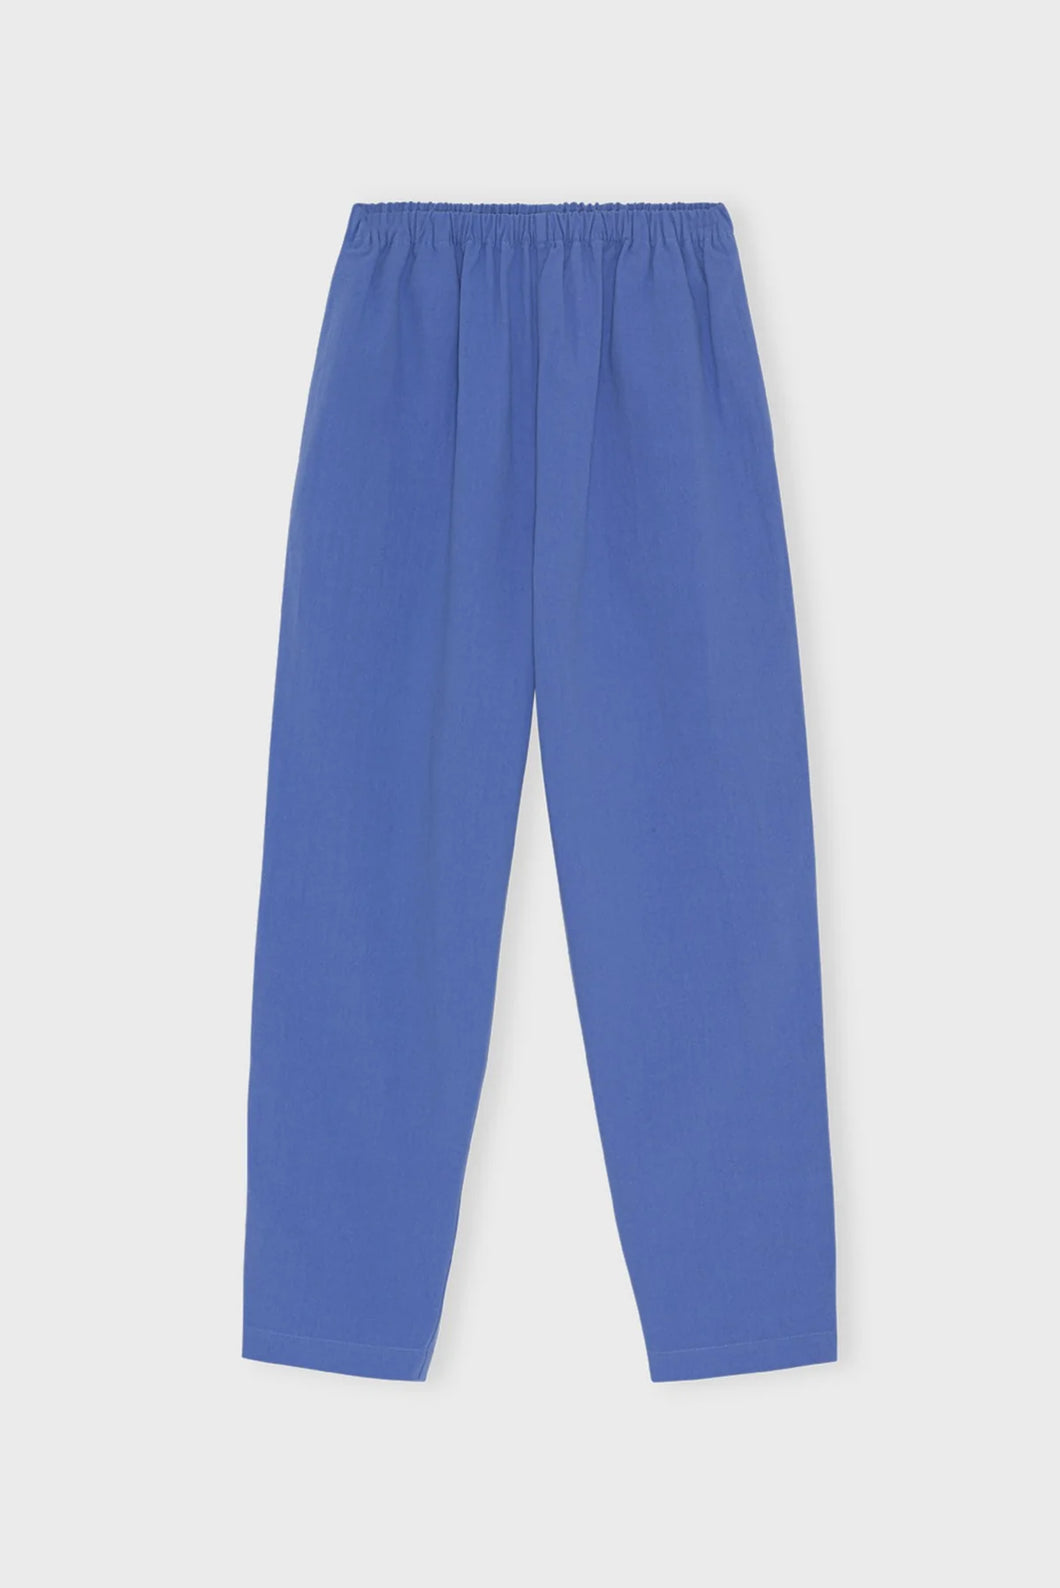 Lower pants crepe - heaven blue